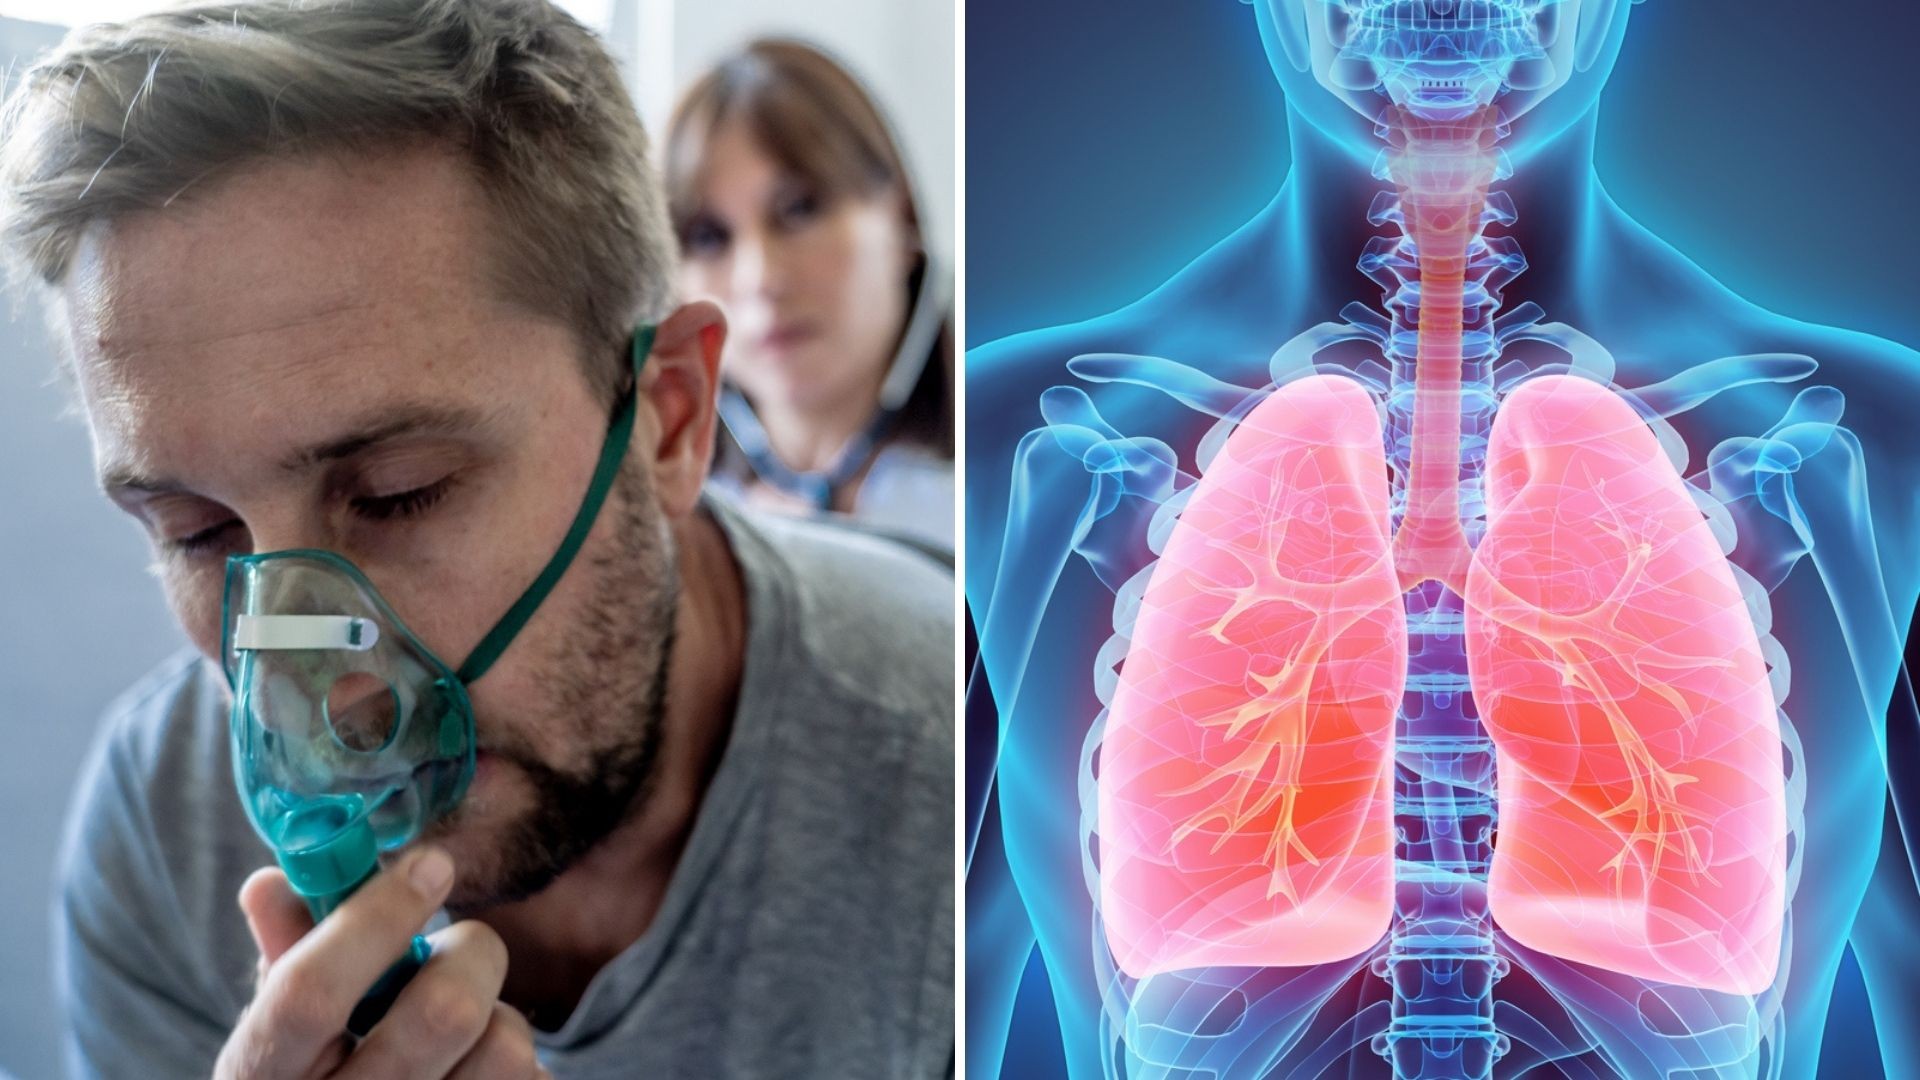 7 peruanos mueren cada día a causa del Cáncer de pulmón